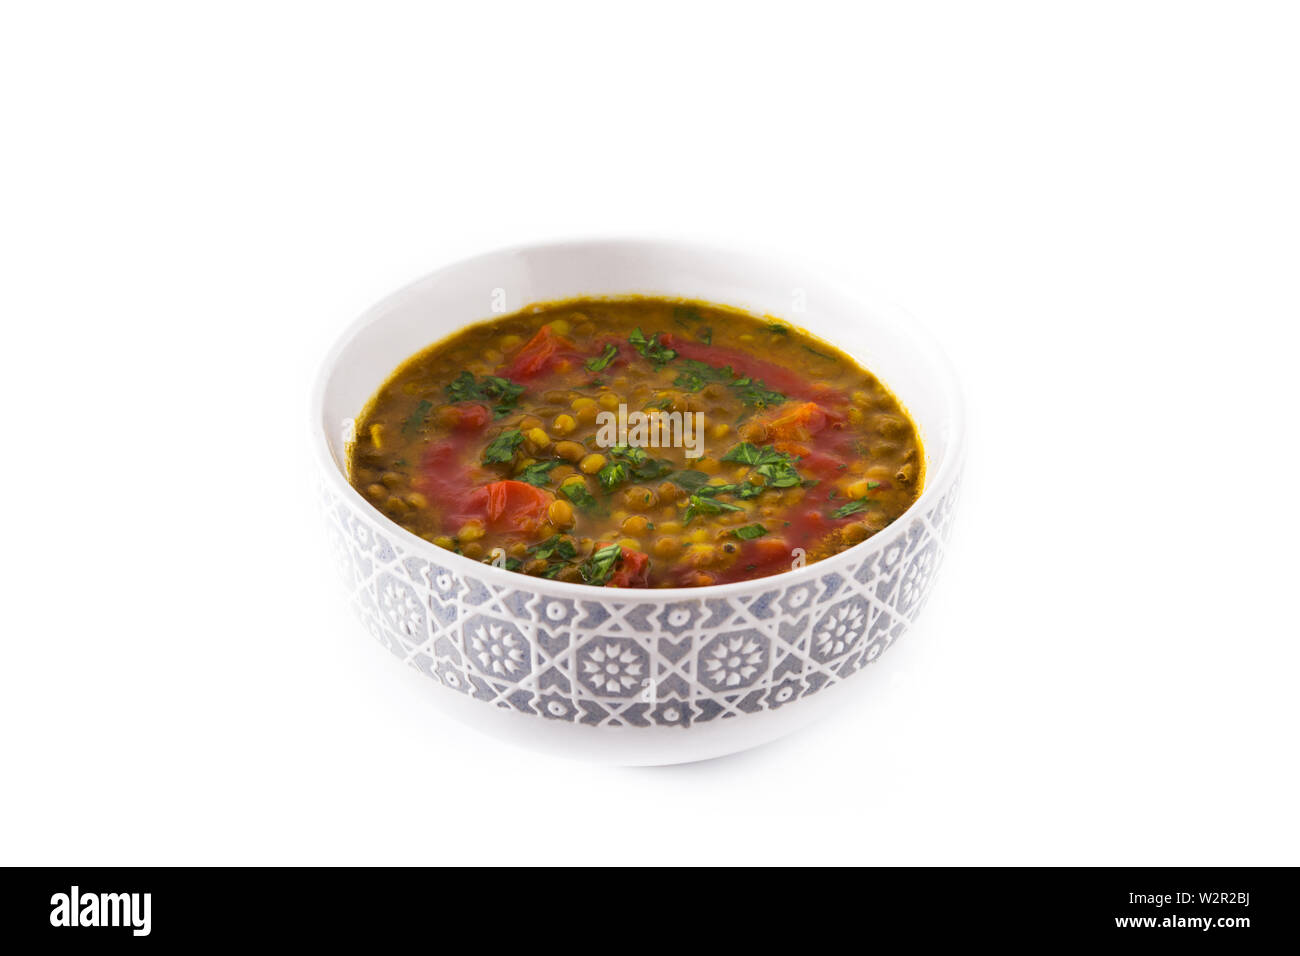 Soupe aux lentilles indiennes dal (dhal) dans un bol isolé sur fond blanc Banque D'Images